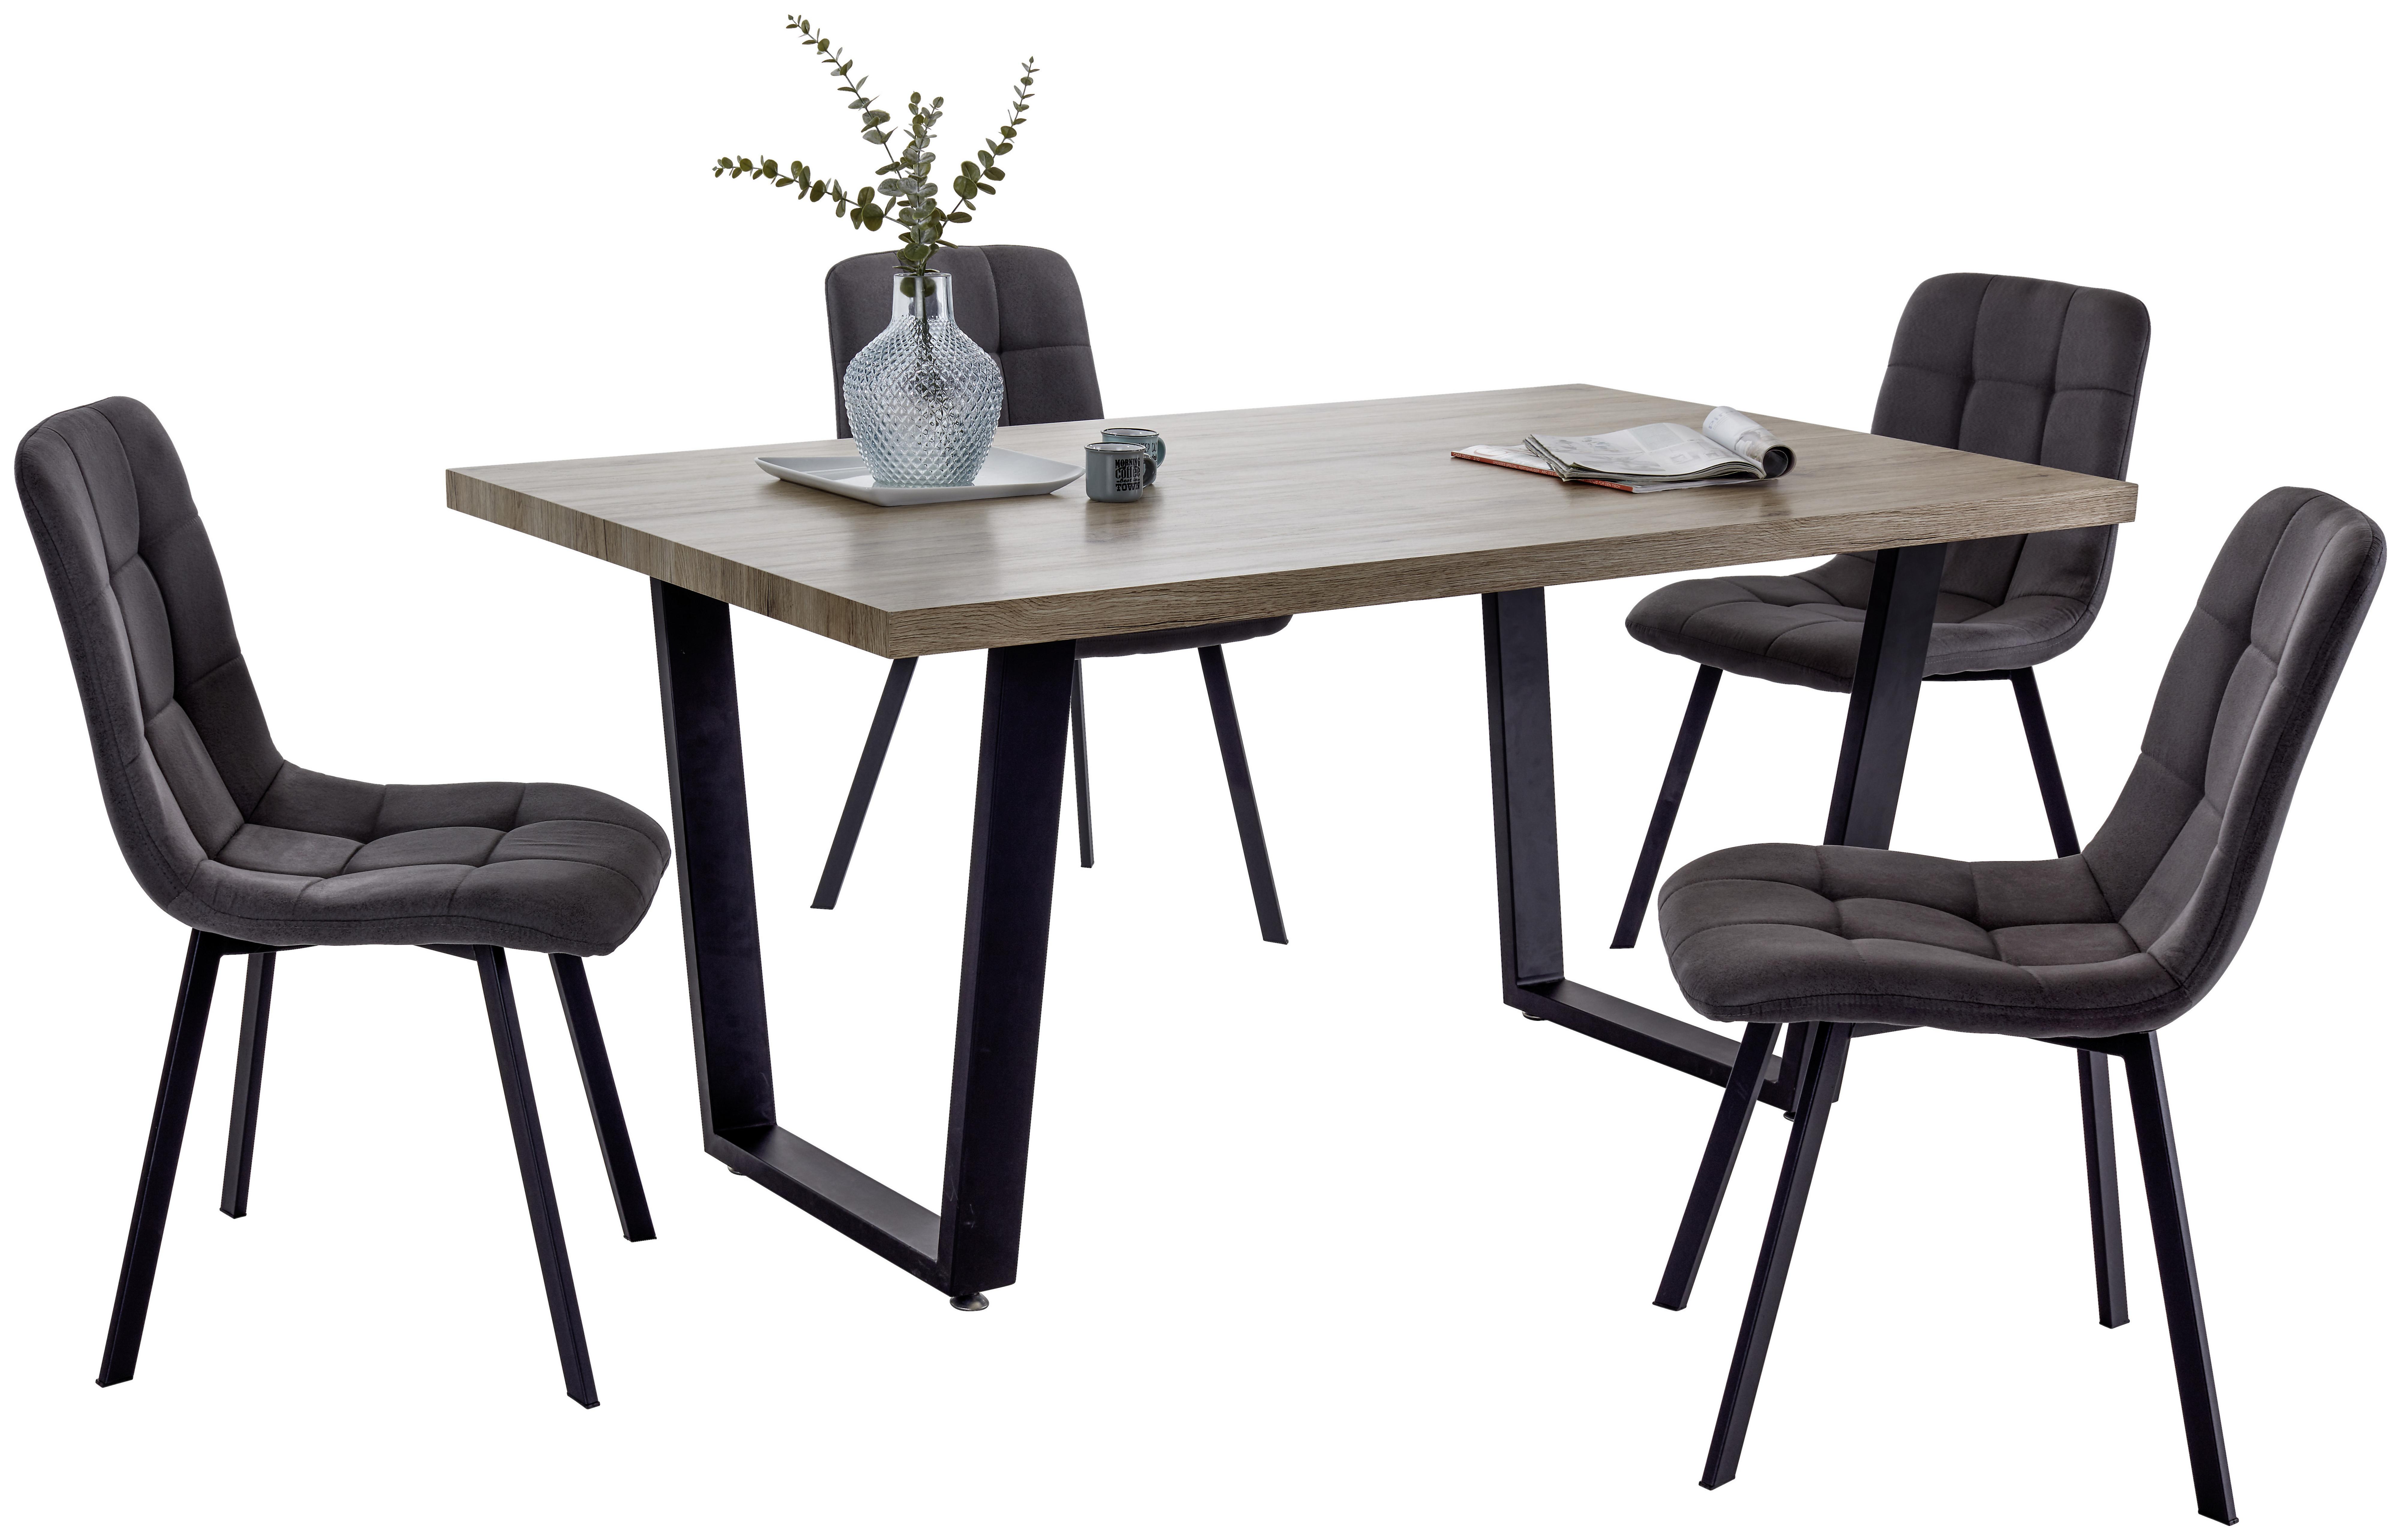 Jídelní Stůl Rudi - černá/barvy dubu, Moderní, kov/dřevo (160/75/90cm)